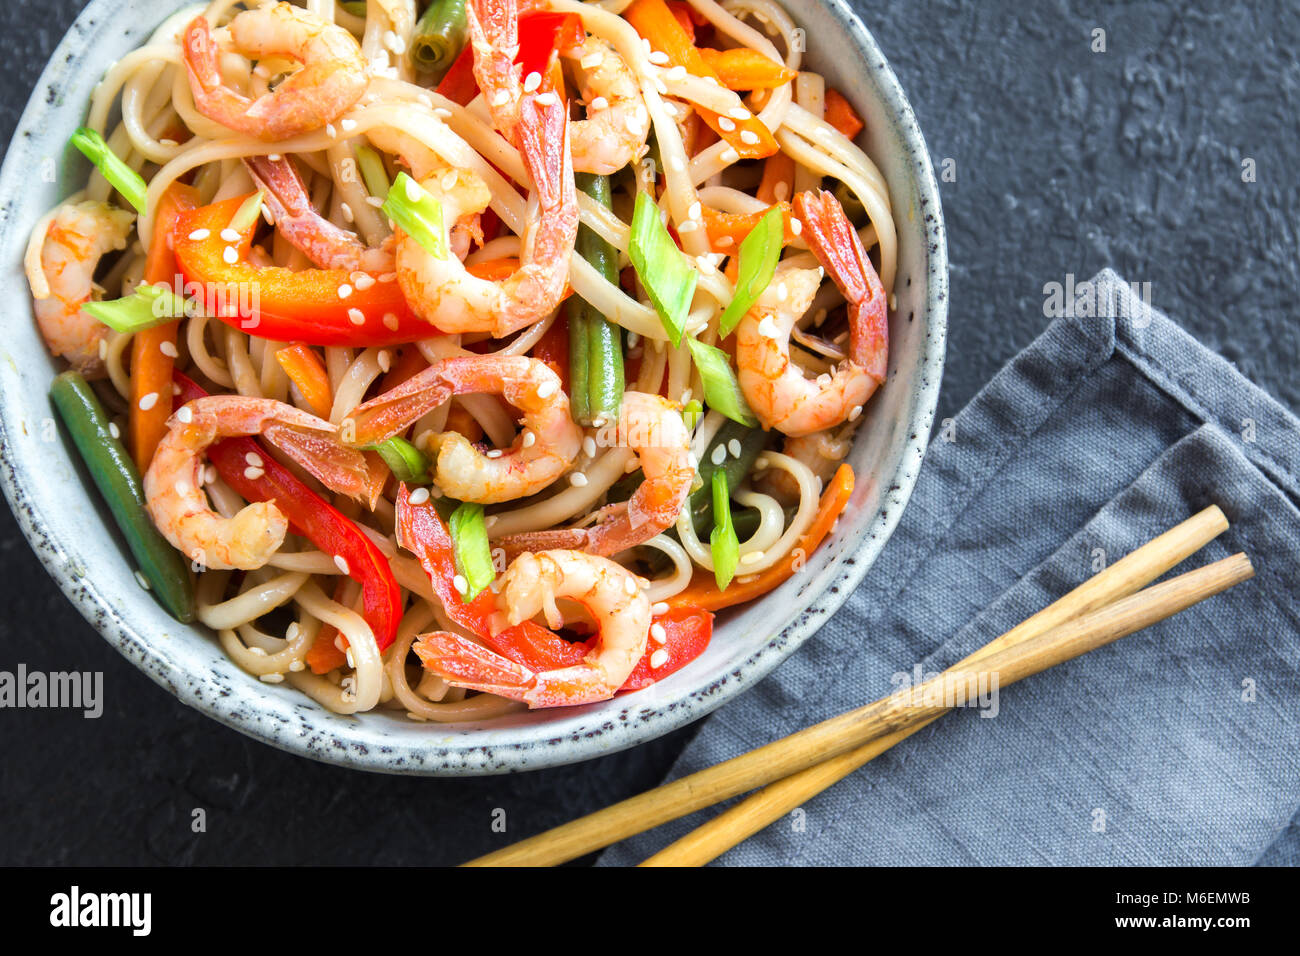 Pfannengerichte mit Udon-nudeln, Shrimps (Garnelen) und Gemüse. Asiatische gesundes Essen, Mahlzeit, Braten in der Schüssel verrühren über schwarzen Hintergrund, kopieren. Stockfoto